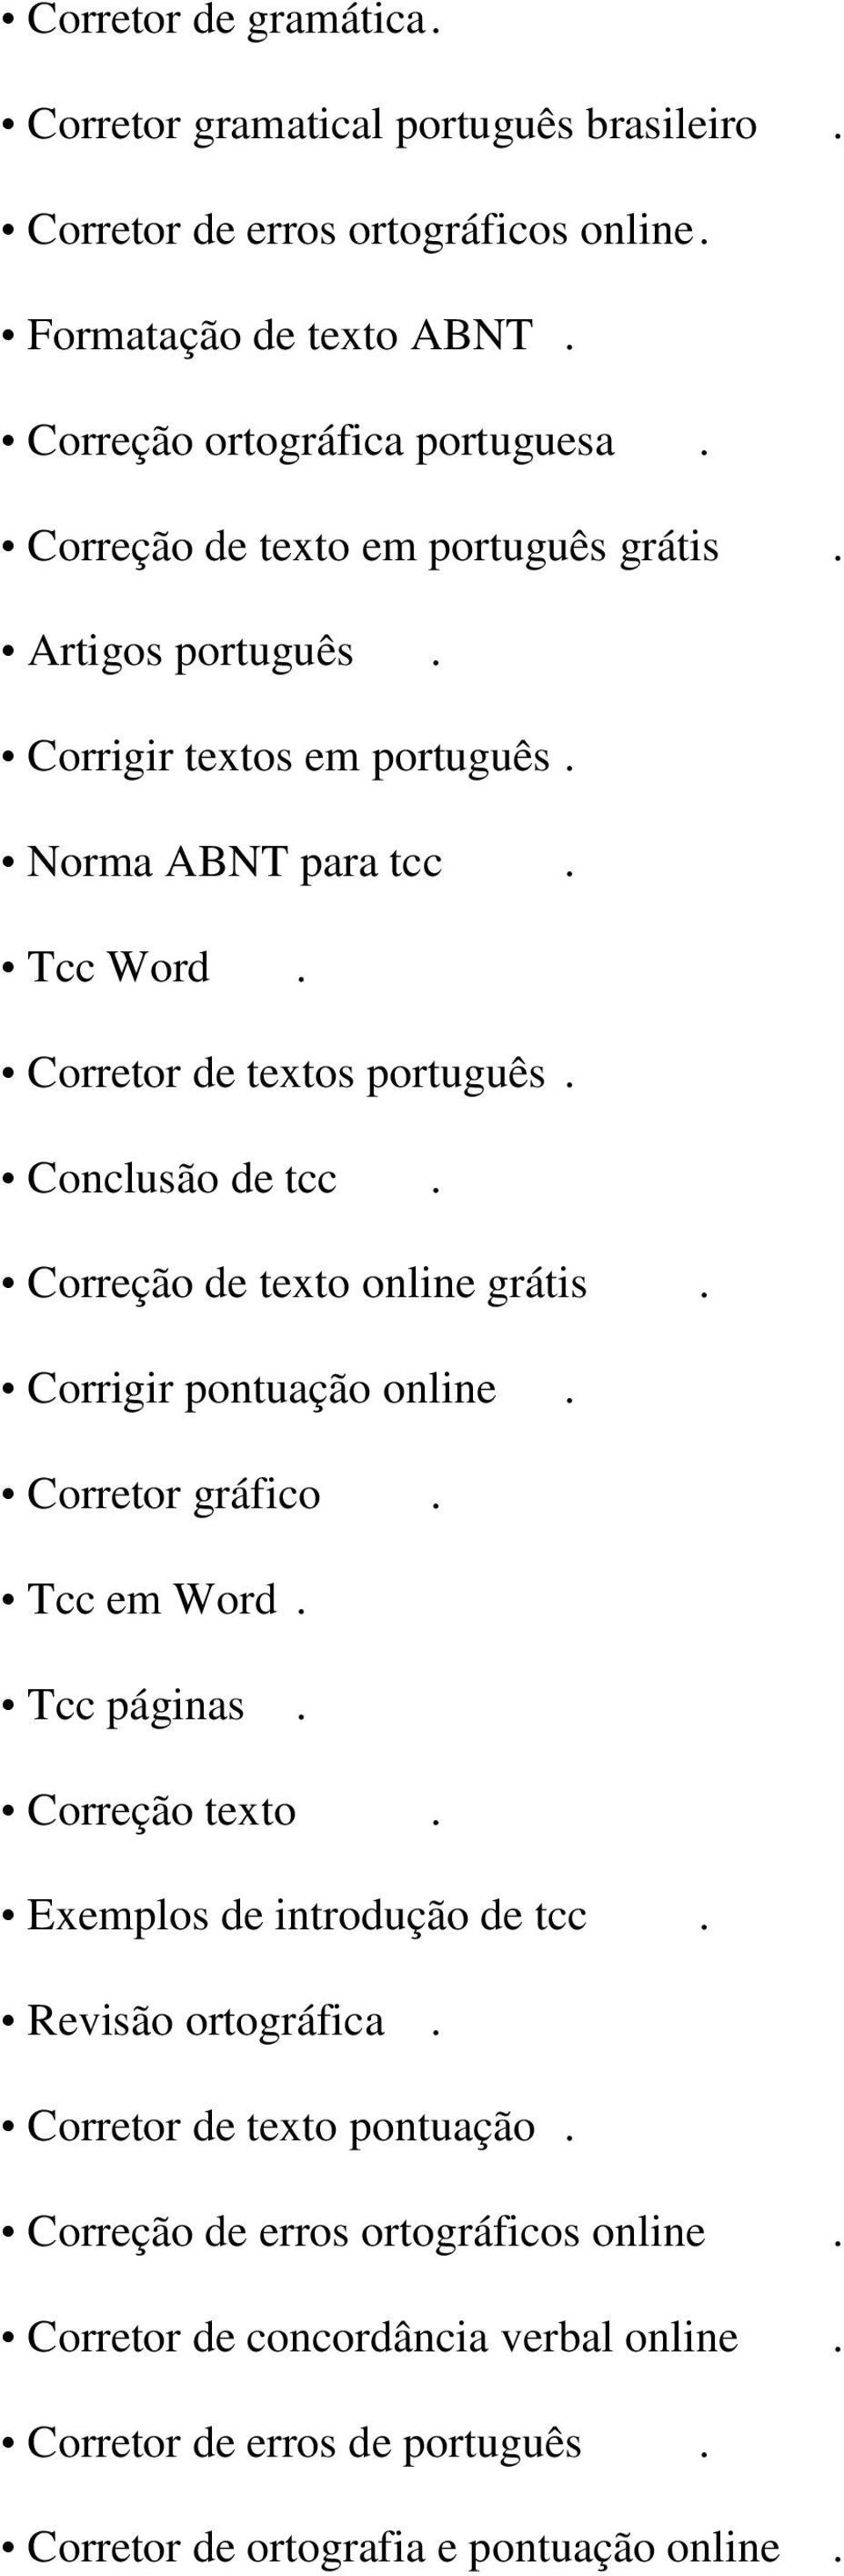 Correção de texto online grátis. Corrigir pontuação online. Corretor gráfico. Tcc em Word. Tcc páginas. Correção texto. Exemplos de introdução de tcc. Revisão ortográfica.